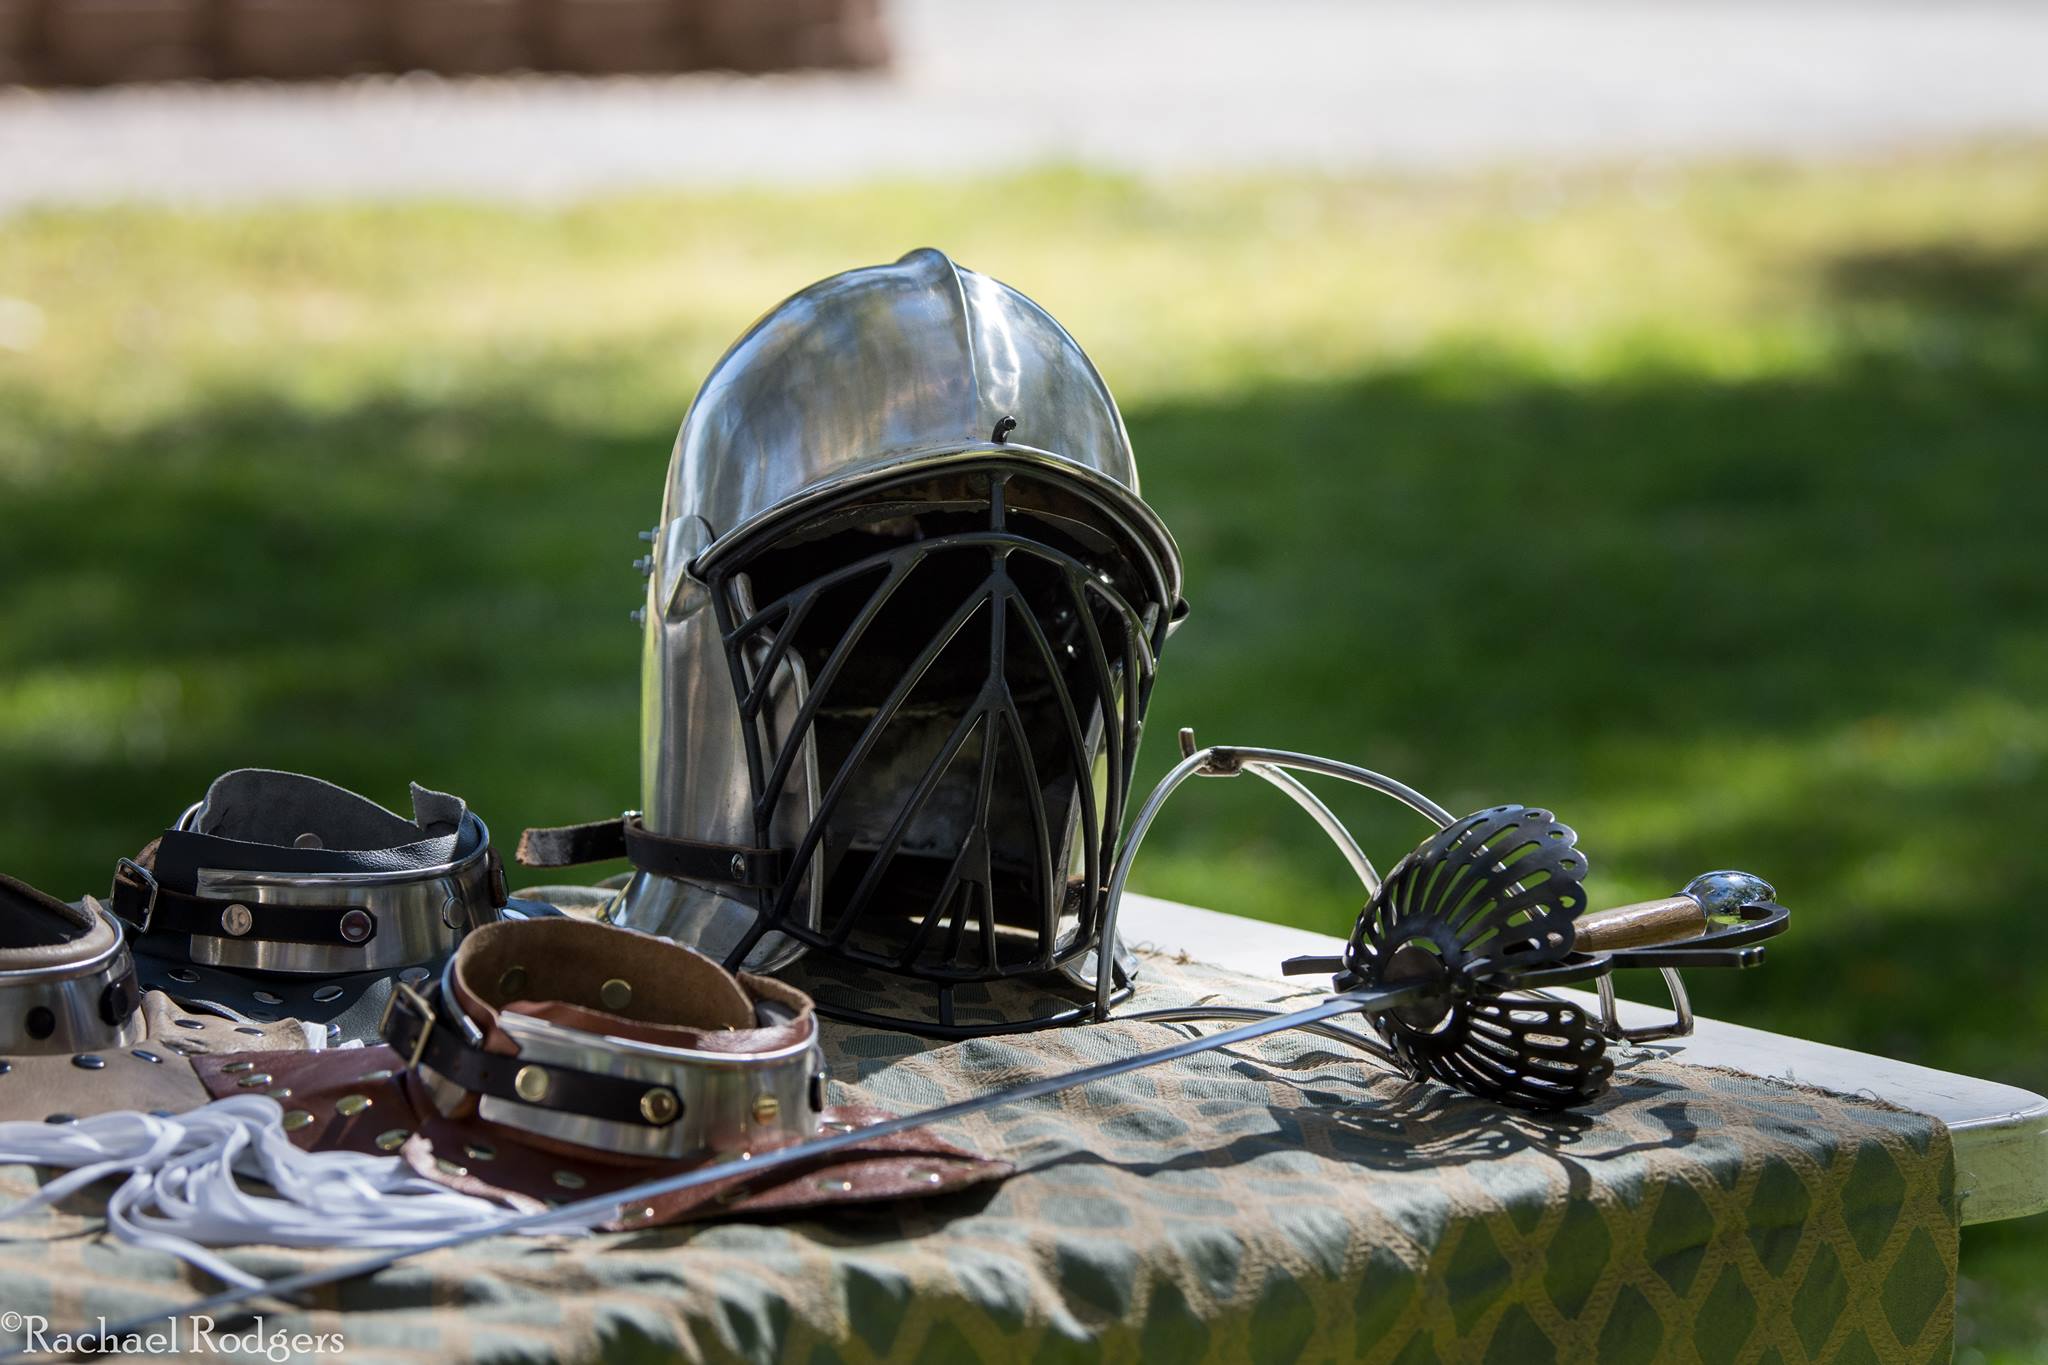 A helmet, rapier, and pieces of armor